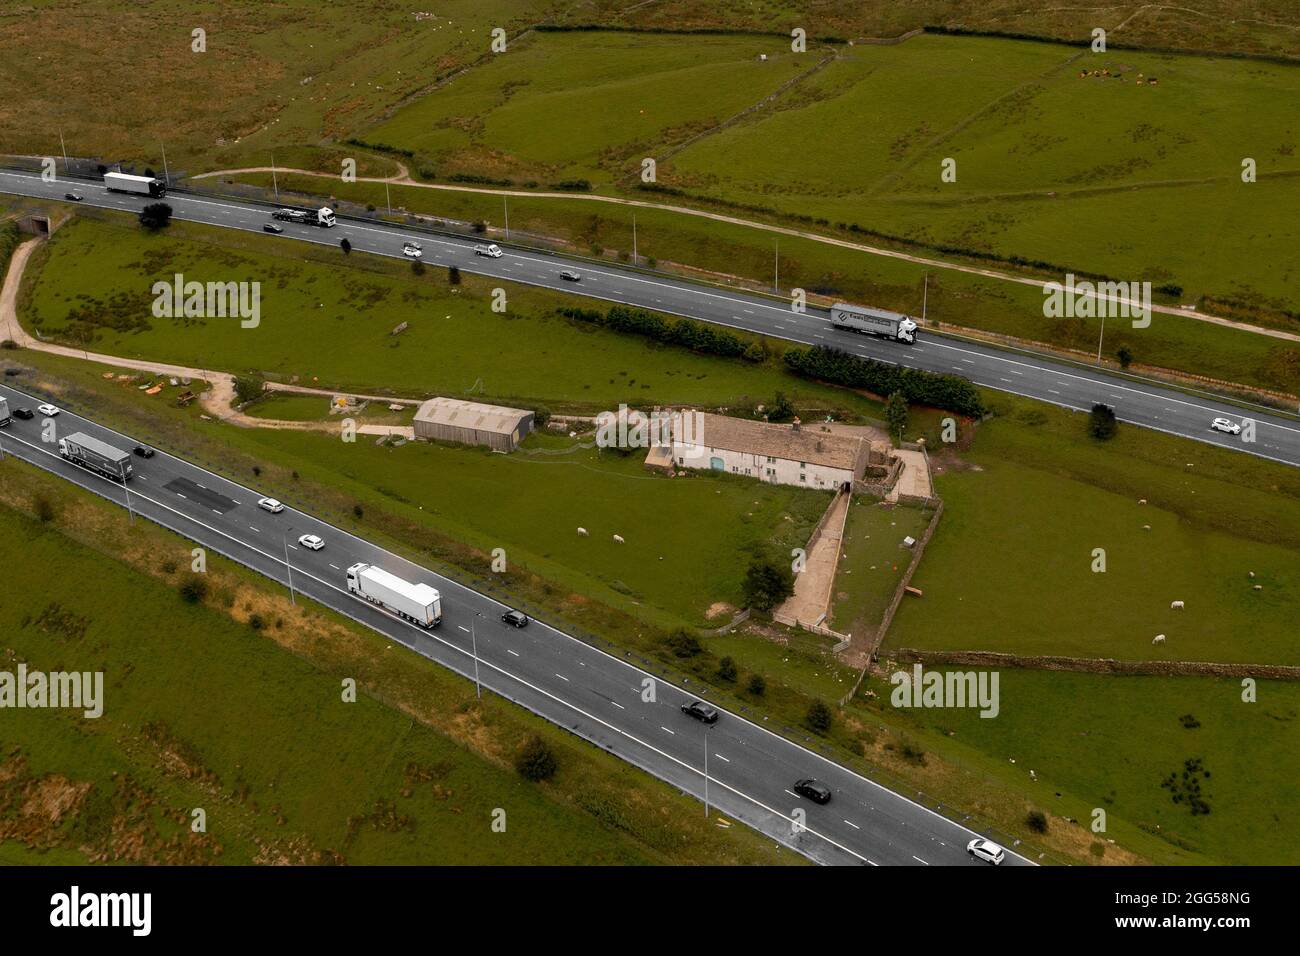 Immagine aerea Pop a colori della famosa fattoria Stott Hall nel mezzo dell'autostrada M62 Foto Stock